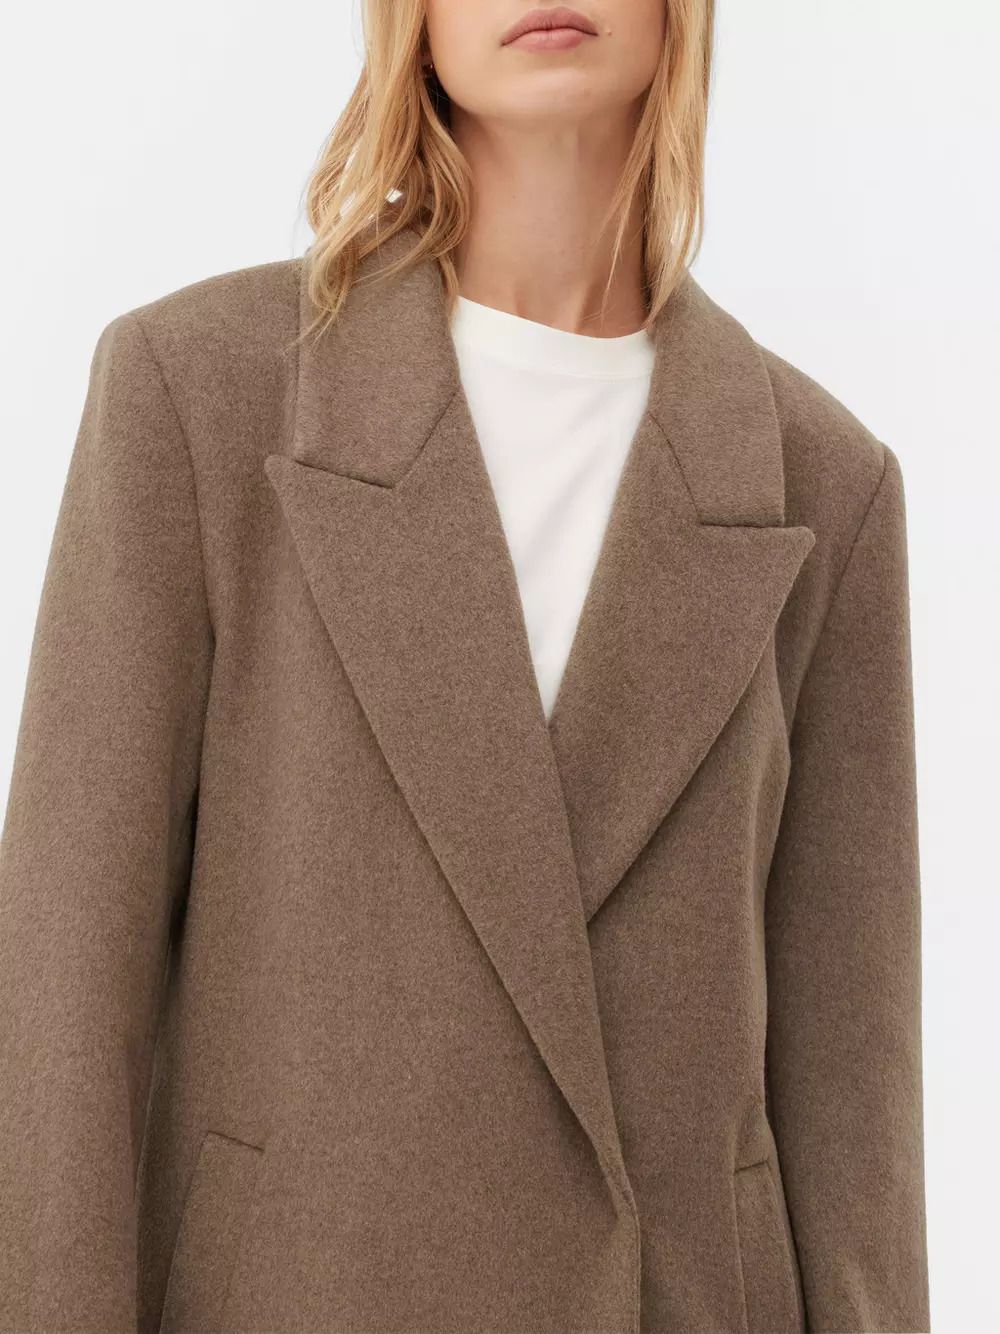 Primark lanza su abrigo de lana premium con el diseño nórdico que